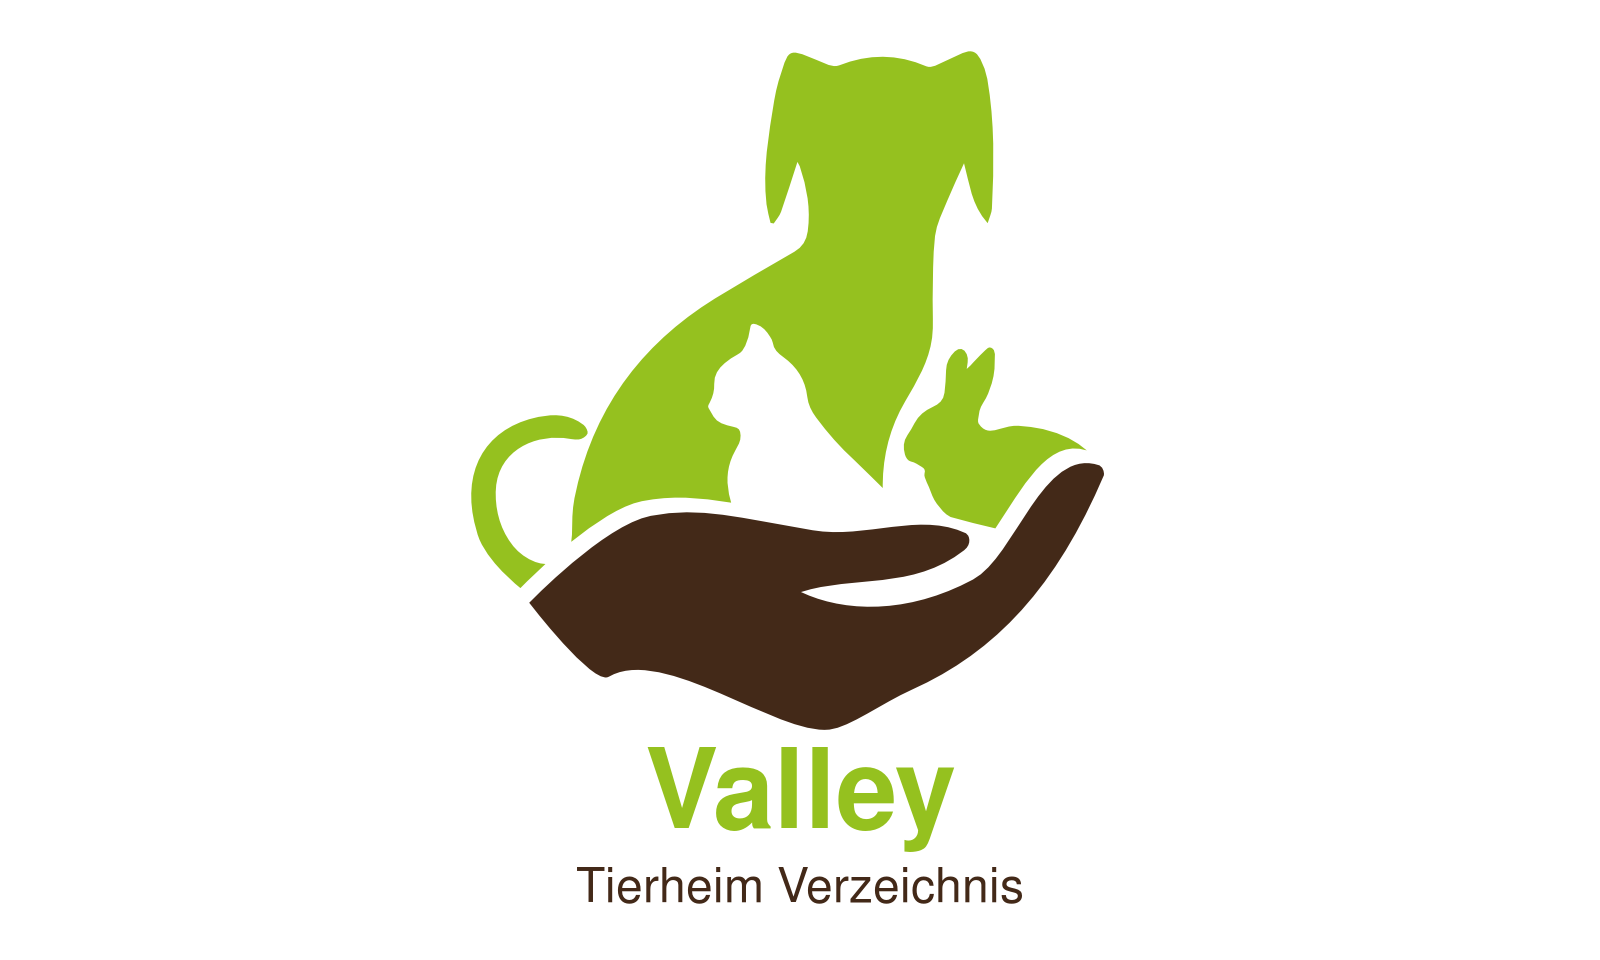 Tierheim Valley